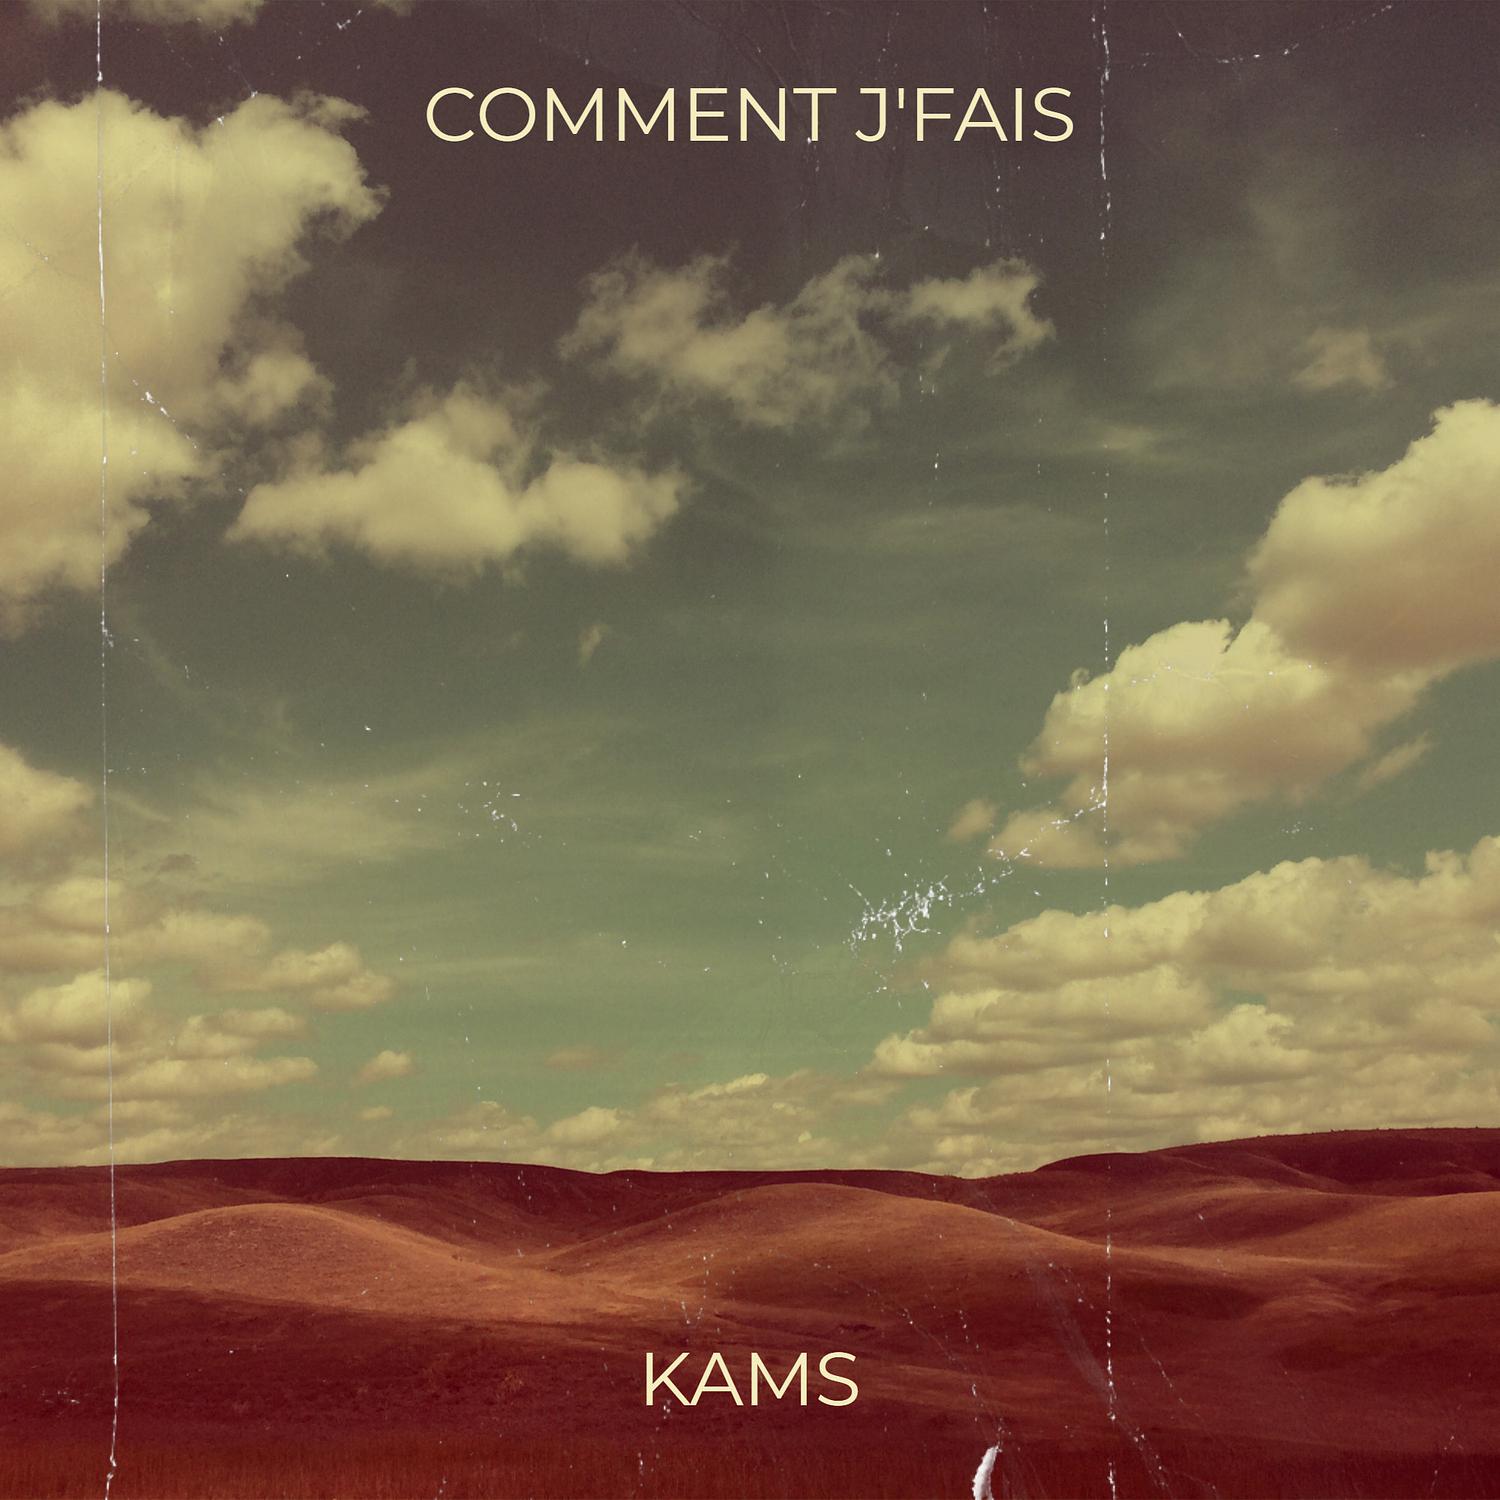 Kams - Comment j'fais